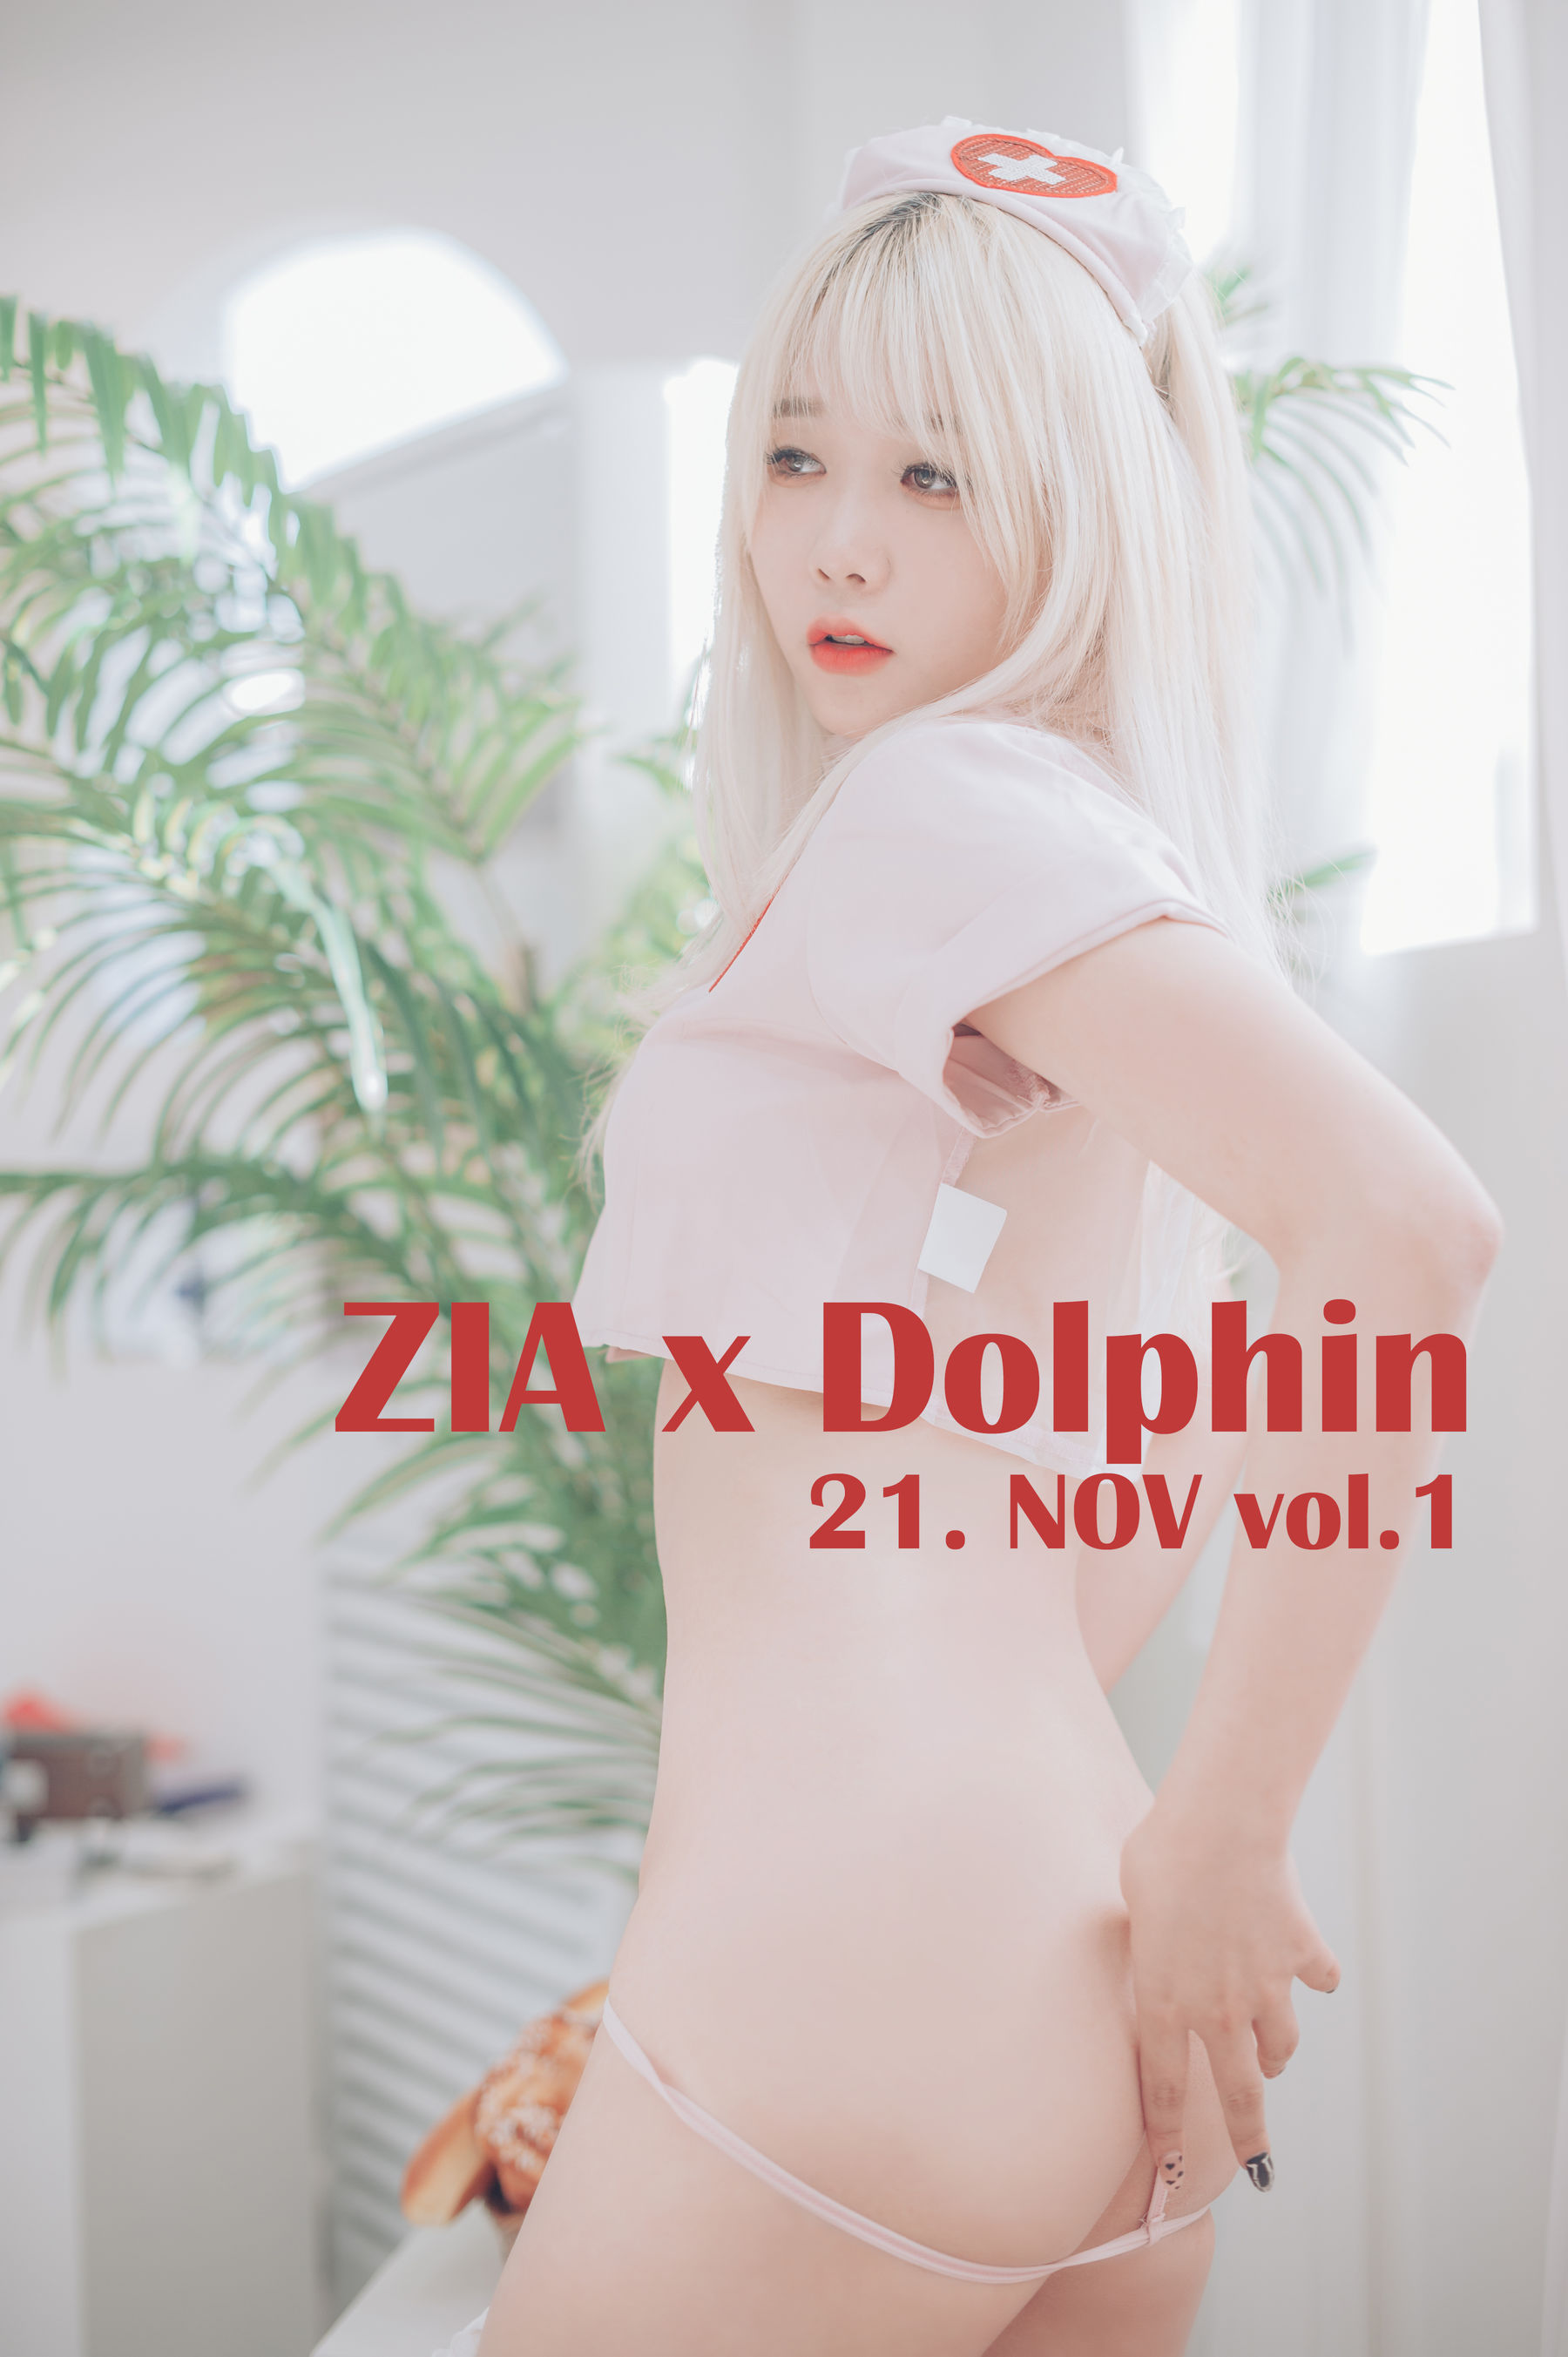 [JOApictures] Zia x DOLPHIN 21. NOV Vol.1  第1张